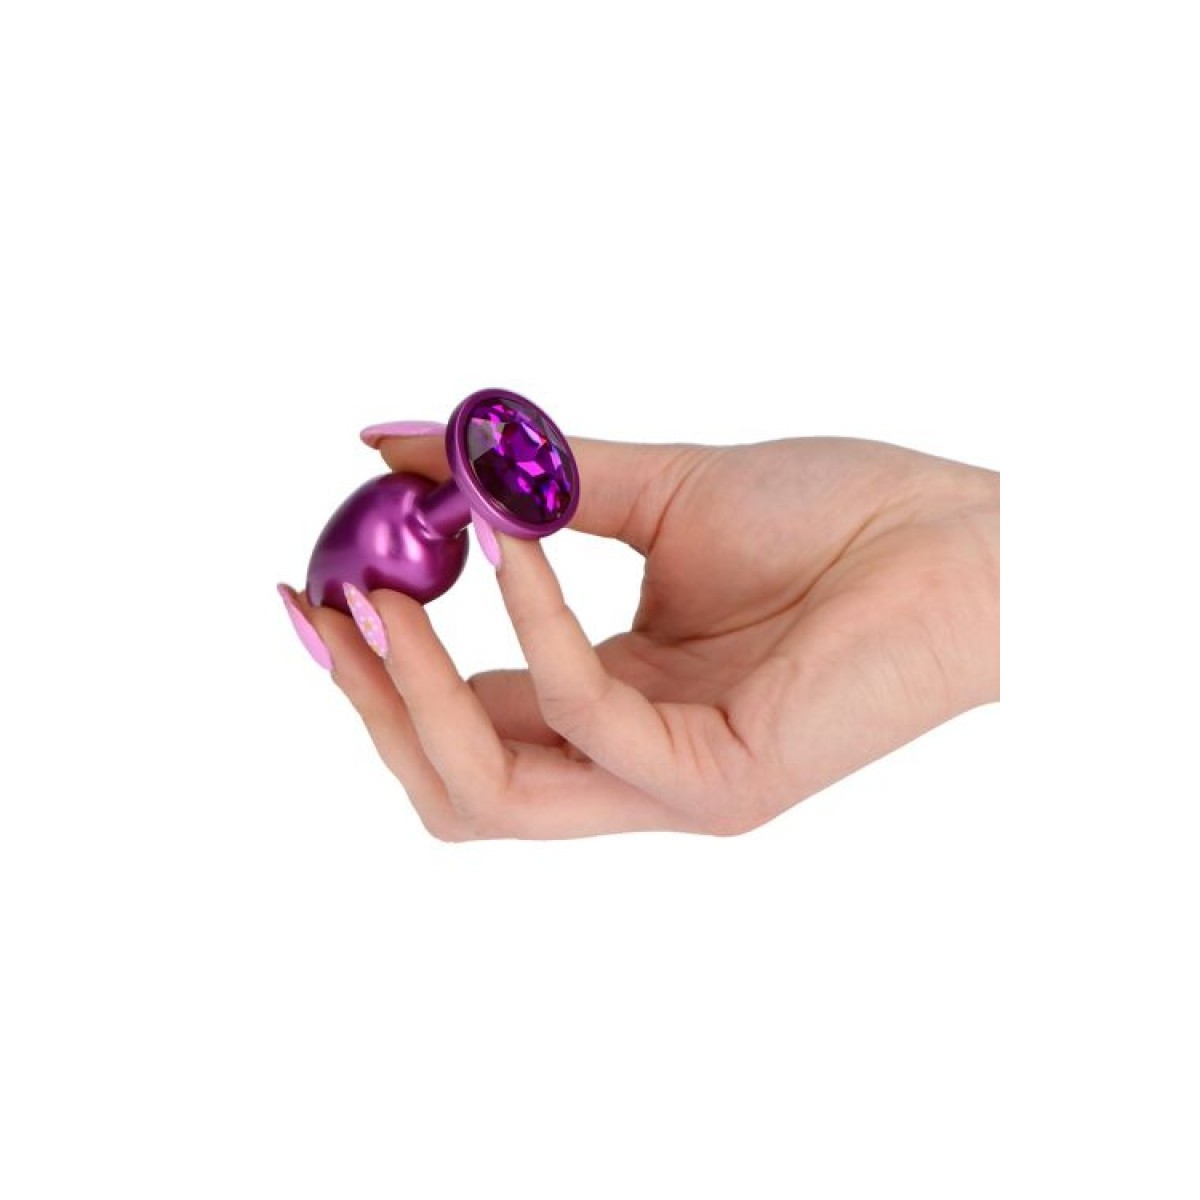 Plug anale Purple Teardrop Small